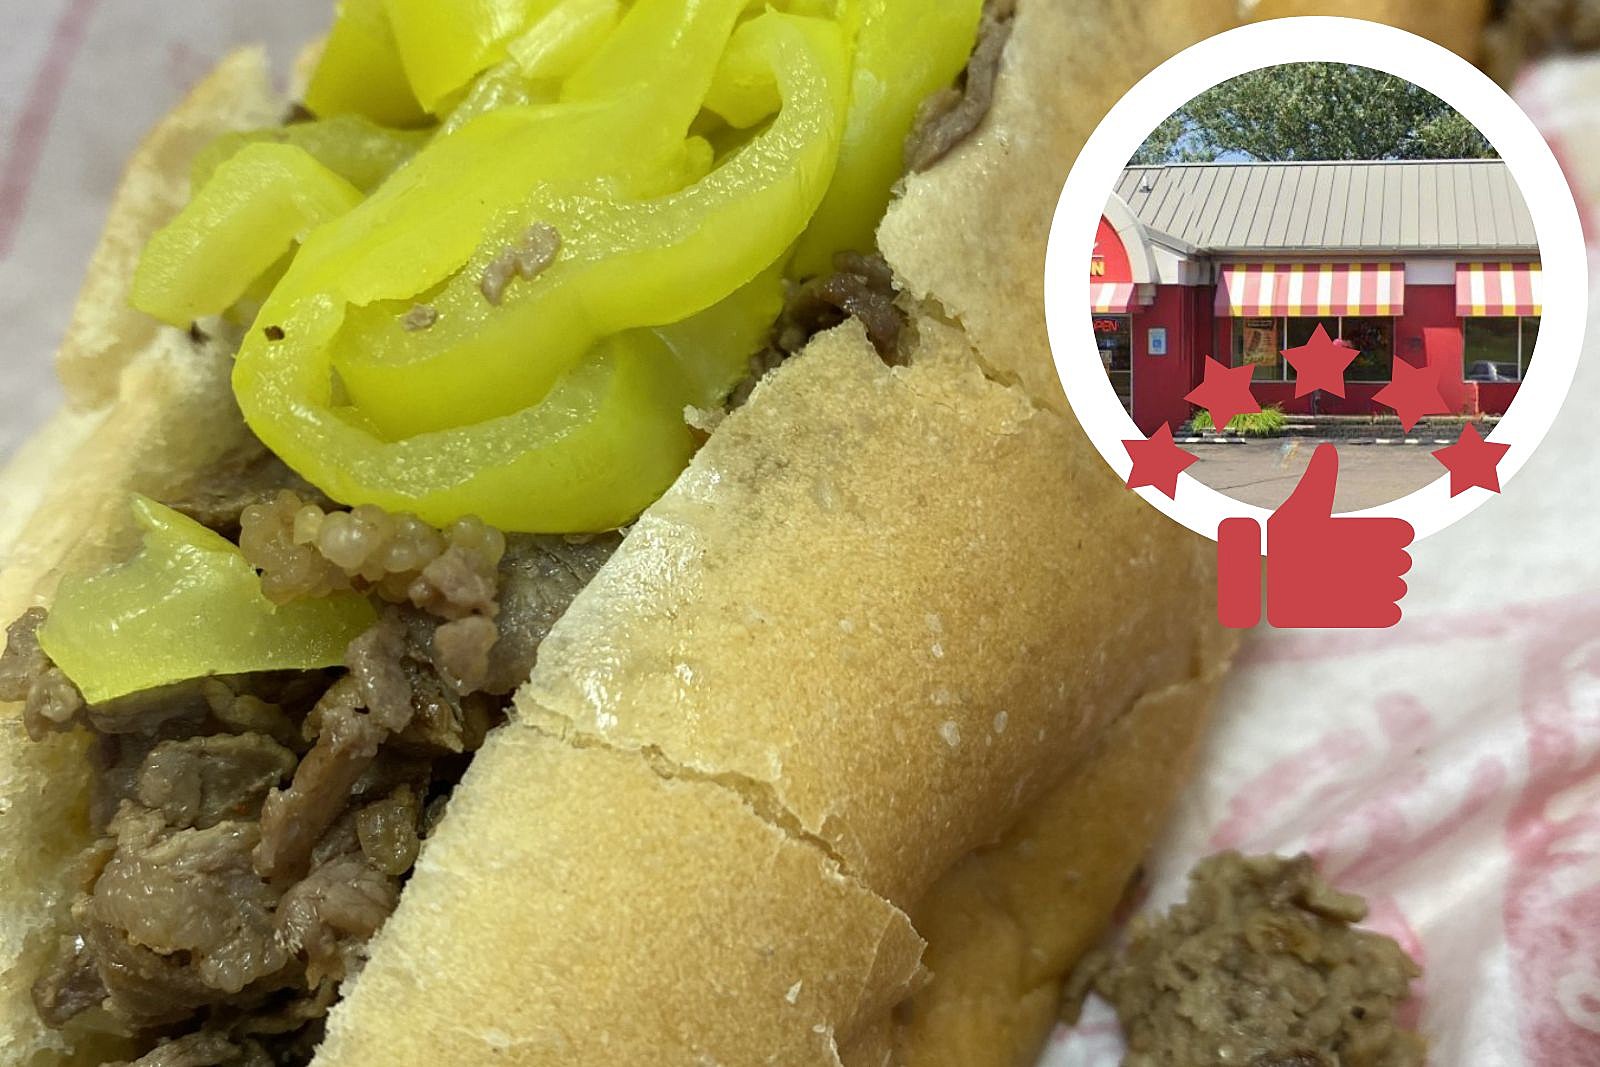 5 great Flint-area sandwich shops to try 